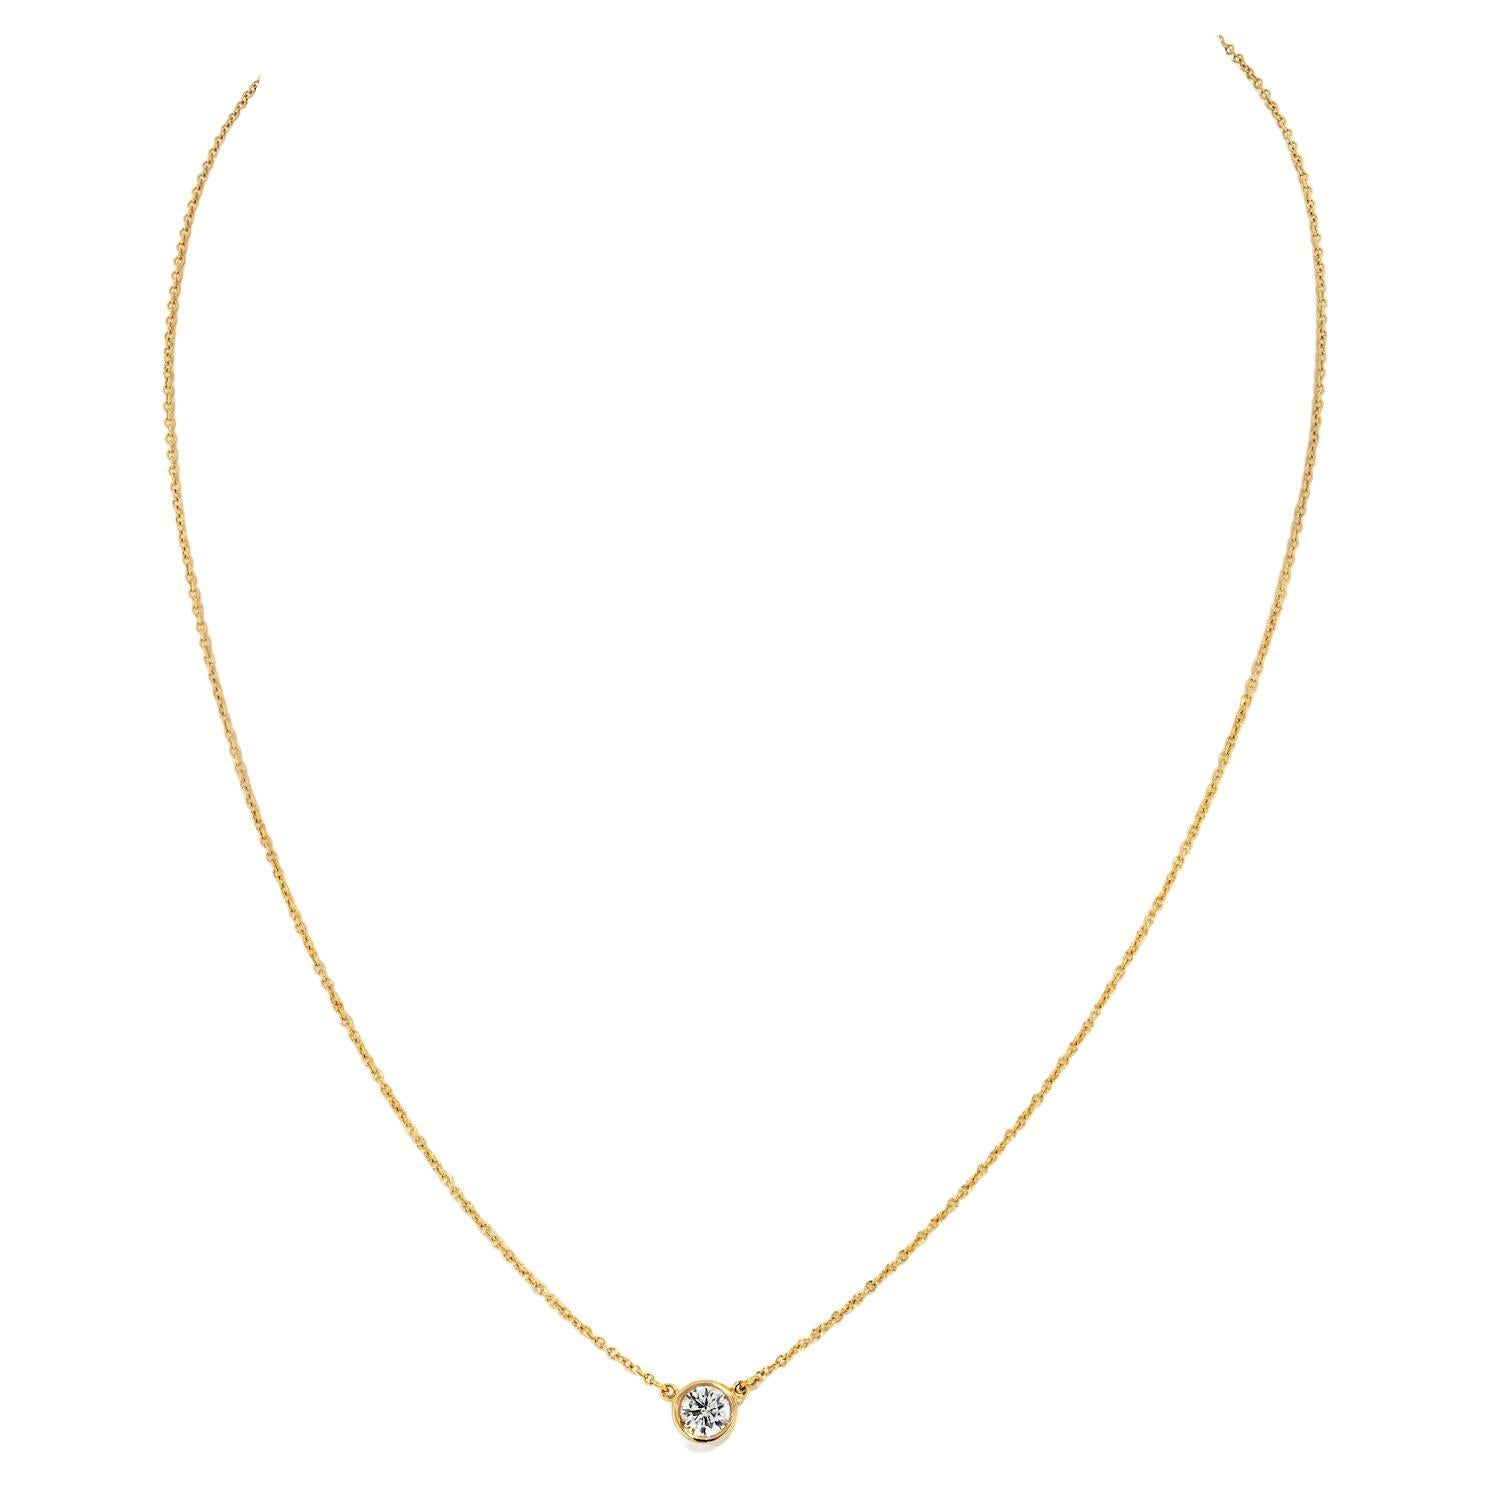 Tiffany & Co Elsa Peretti 18KY Gold 0.45ct Round Cut Diamond Delicate Pendant